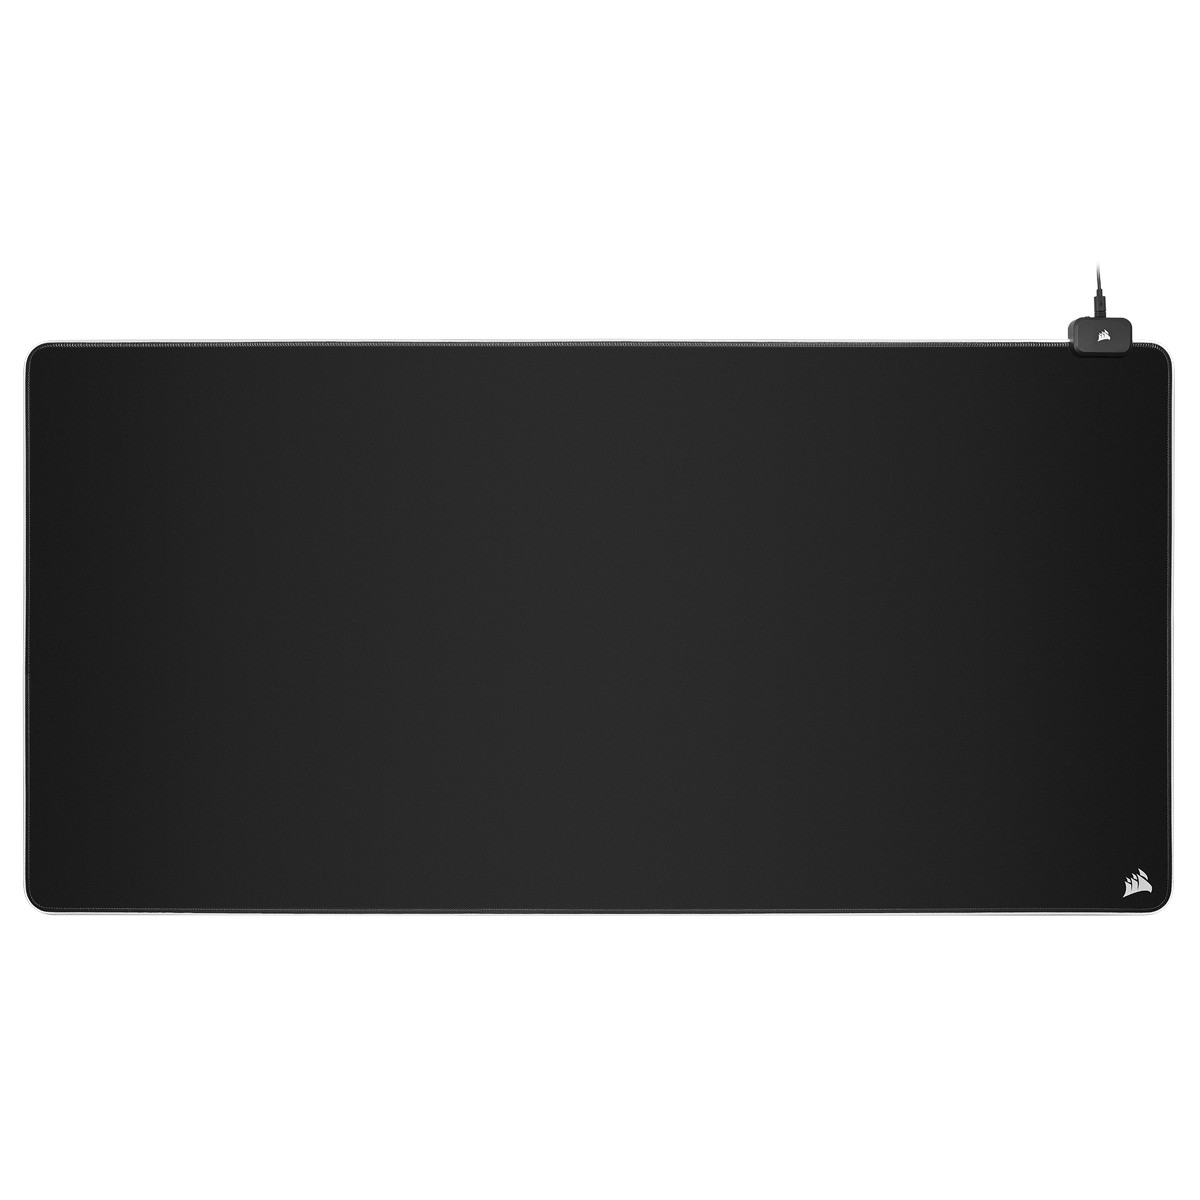 CORSAIR - Corsair MM700 RGB Desk Gaming Surface - 3XL 1200x610x4mm (CH-9417080-WW)